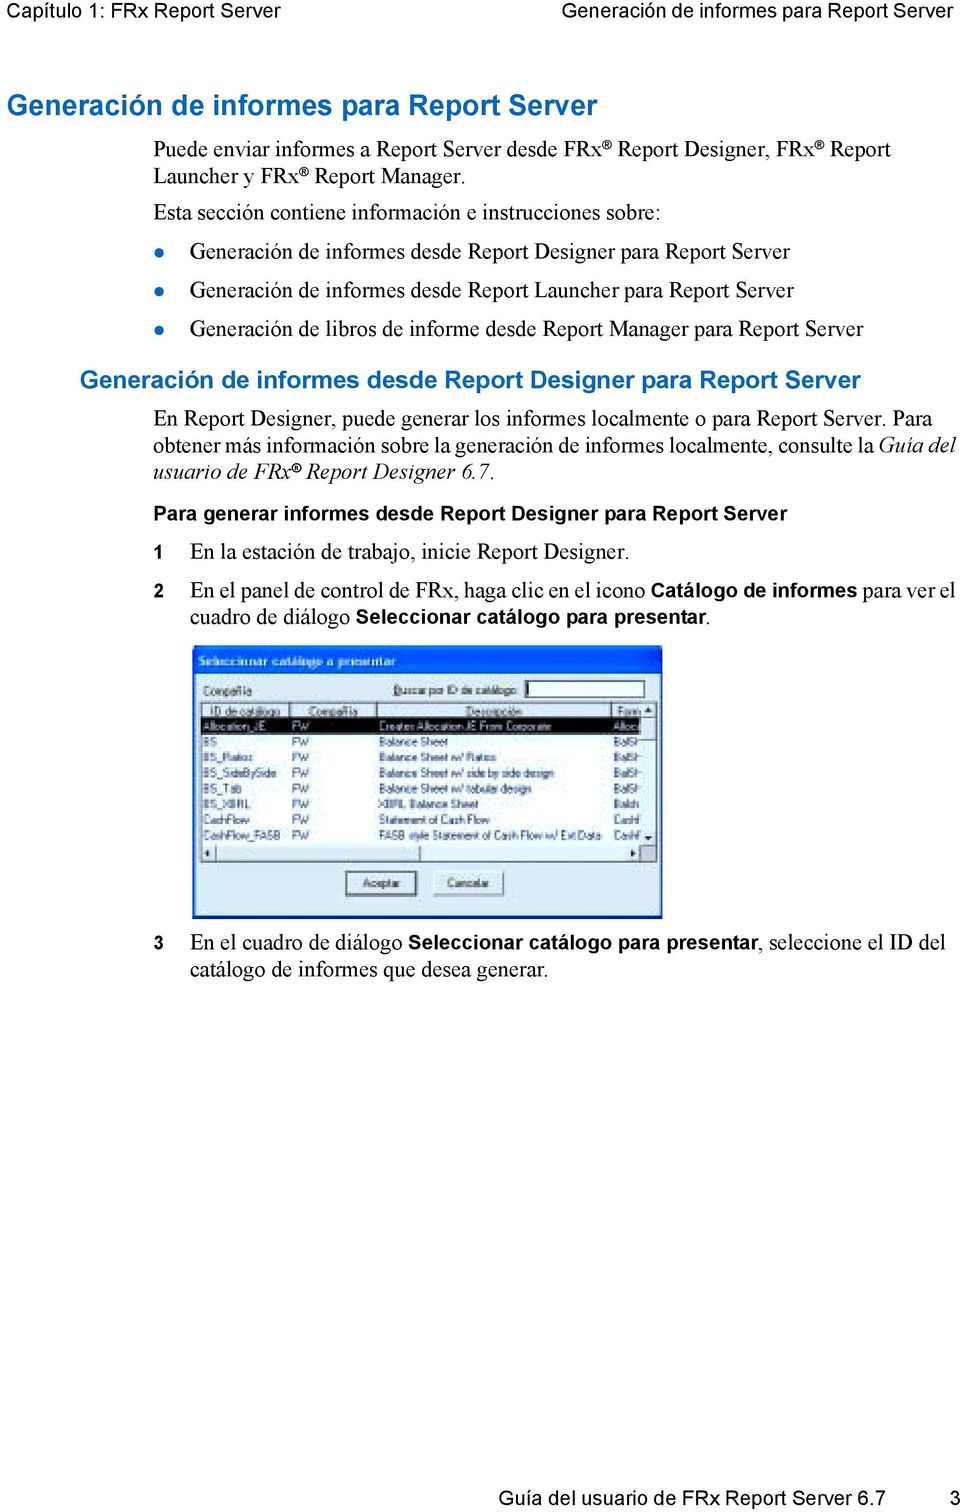 Generación de informes desde Report Launcher para Report Server!